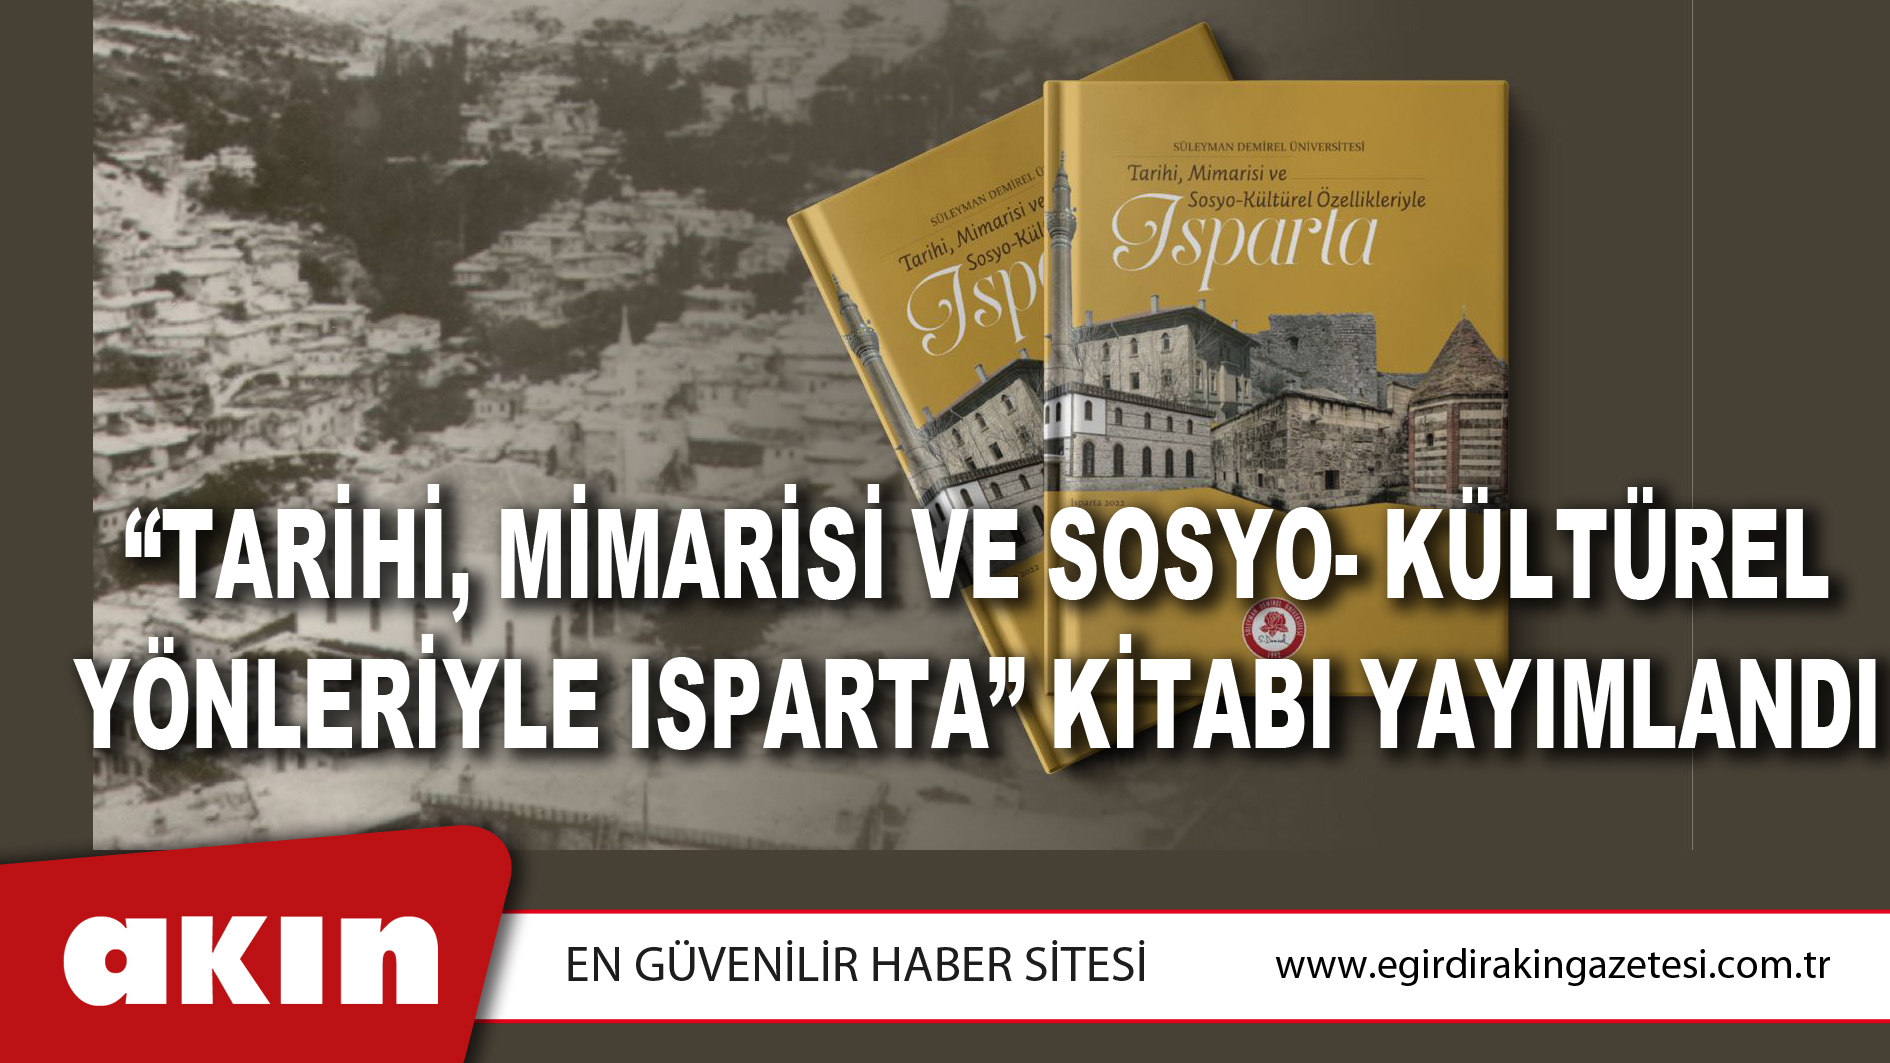 eğirdir haber,akın gazetesi,egirdir haberler,son dakika,“Tarihi, Mimarisi ve Sosyo- Kültürel Yönleriyle Isparta” Kitabı Yayımlandı